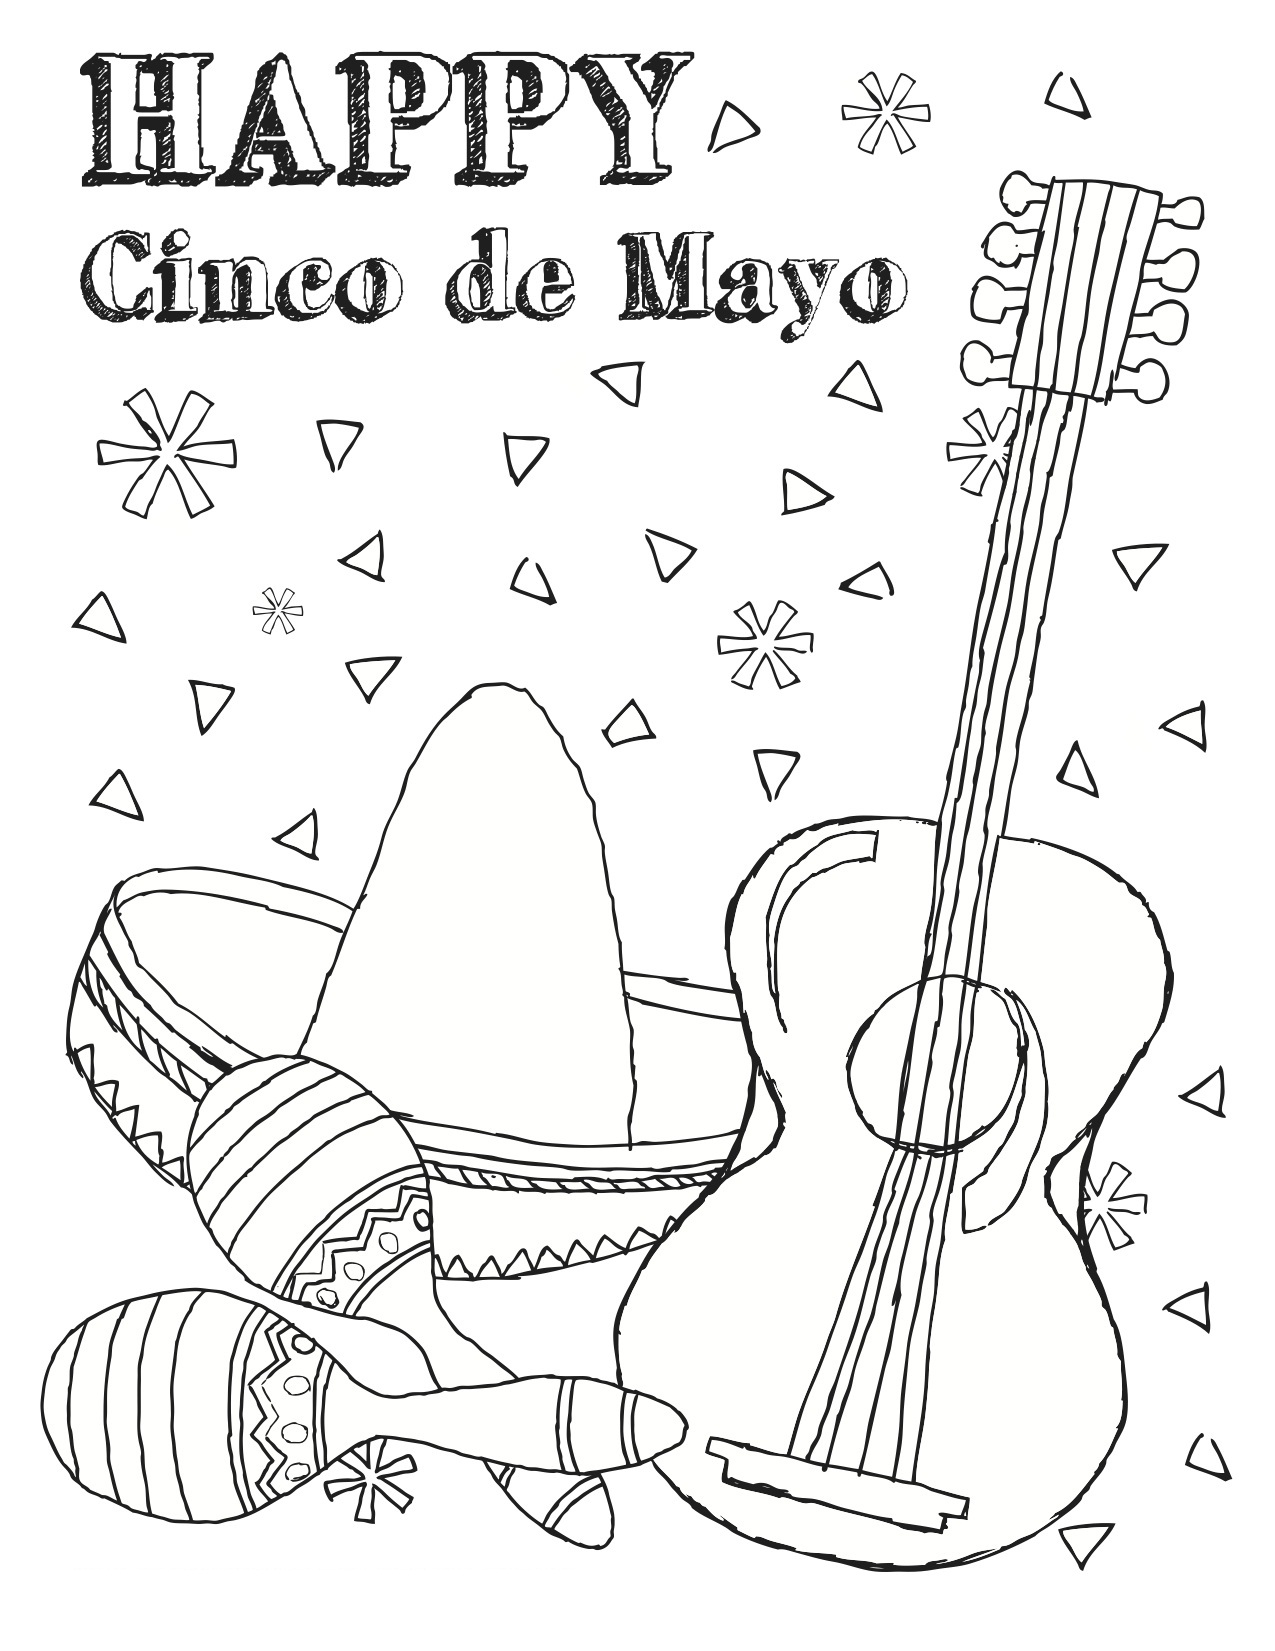 Free Printable Cinco De Mayo Coloring Pages For Kids Best Coloring Pages For Kids